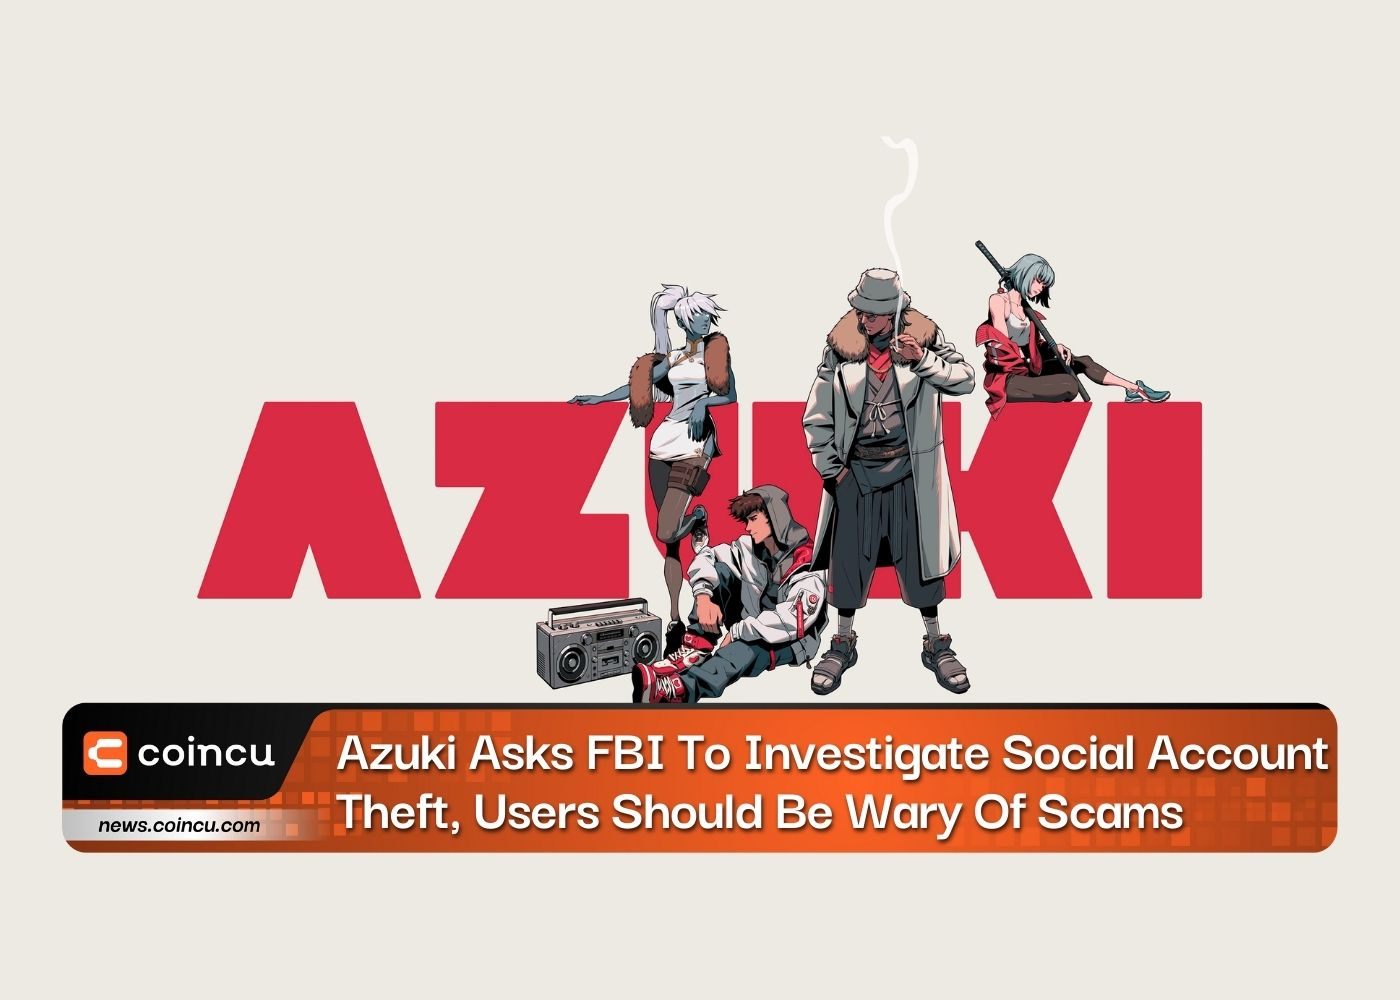 Azuki pede ao FBI para investigar roubo de contas sociais, os usuários devem ter cuidado com golpes